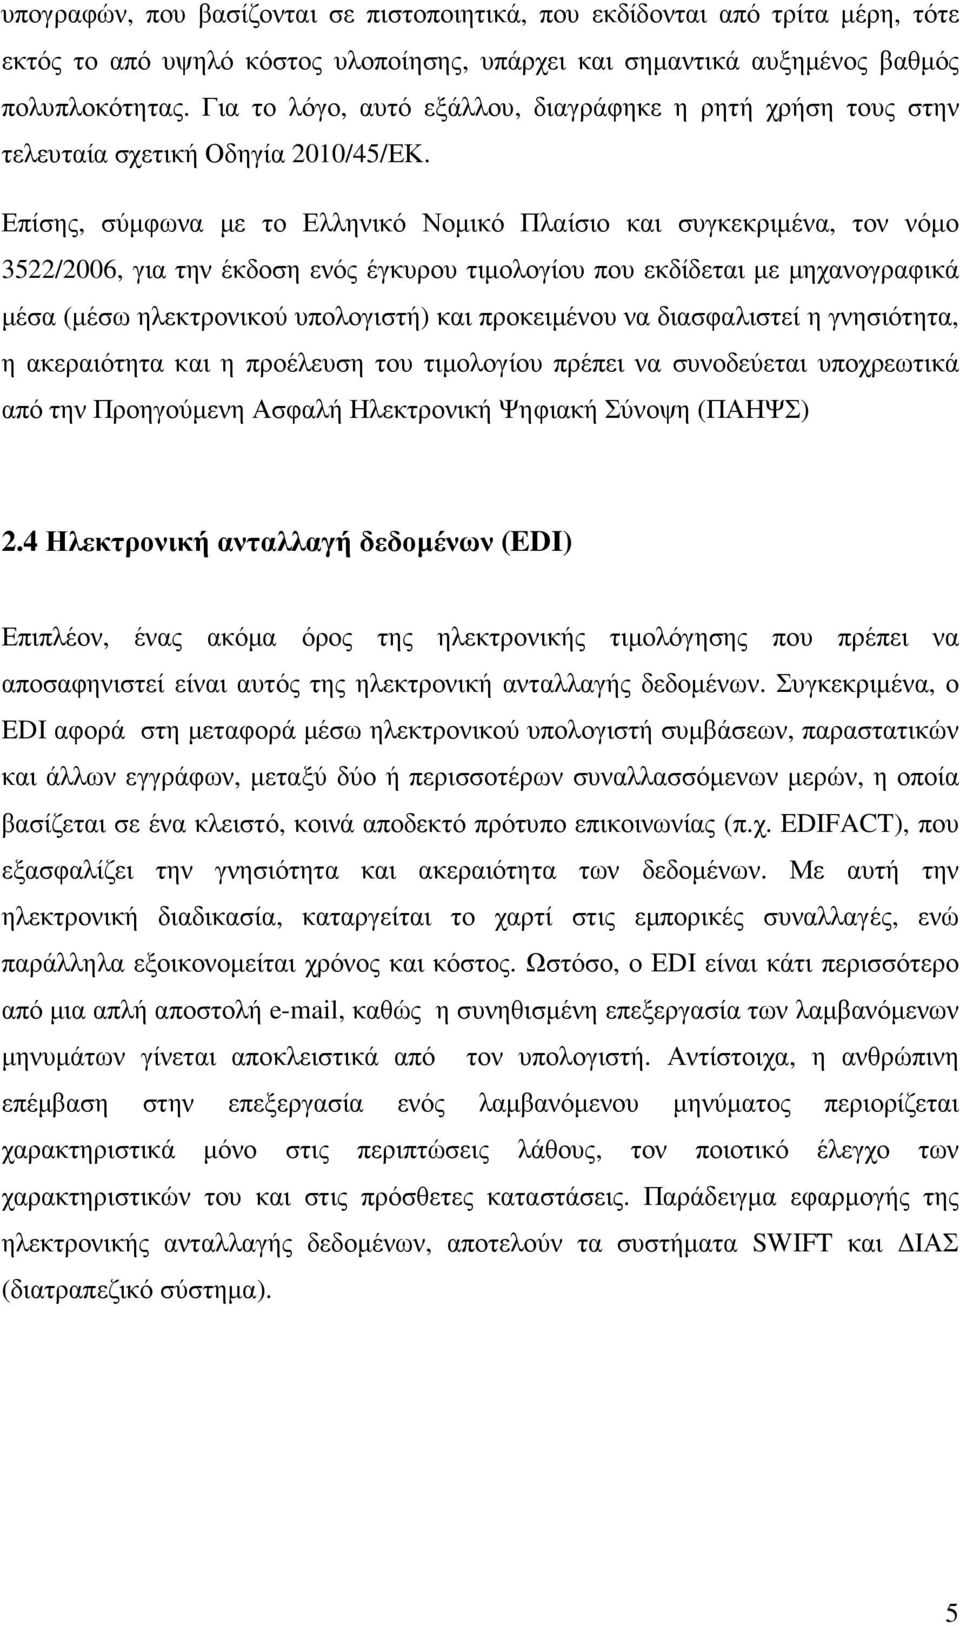 Επίσης, σύµφωνα µε το Ελληνικό Νοµικό Πλαίσιο και συγκεκριµένα, τον νόµο 3522/2006, για την έκδοση ενός έγκυρου τιµολογίου που εκδίδεται µε µηχανογραφικά µέσα (µέσω ηλεκτρονικού υπολογιστή) και